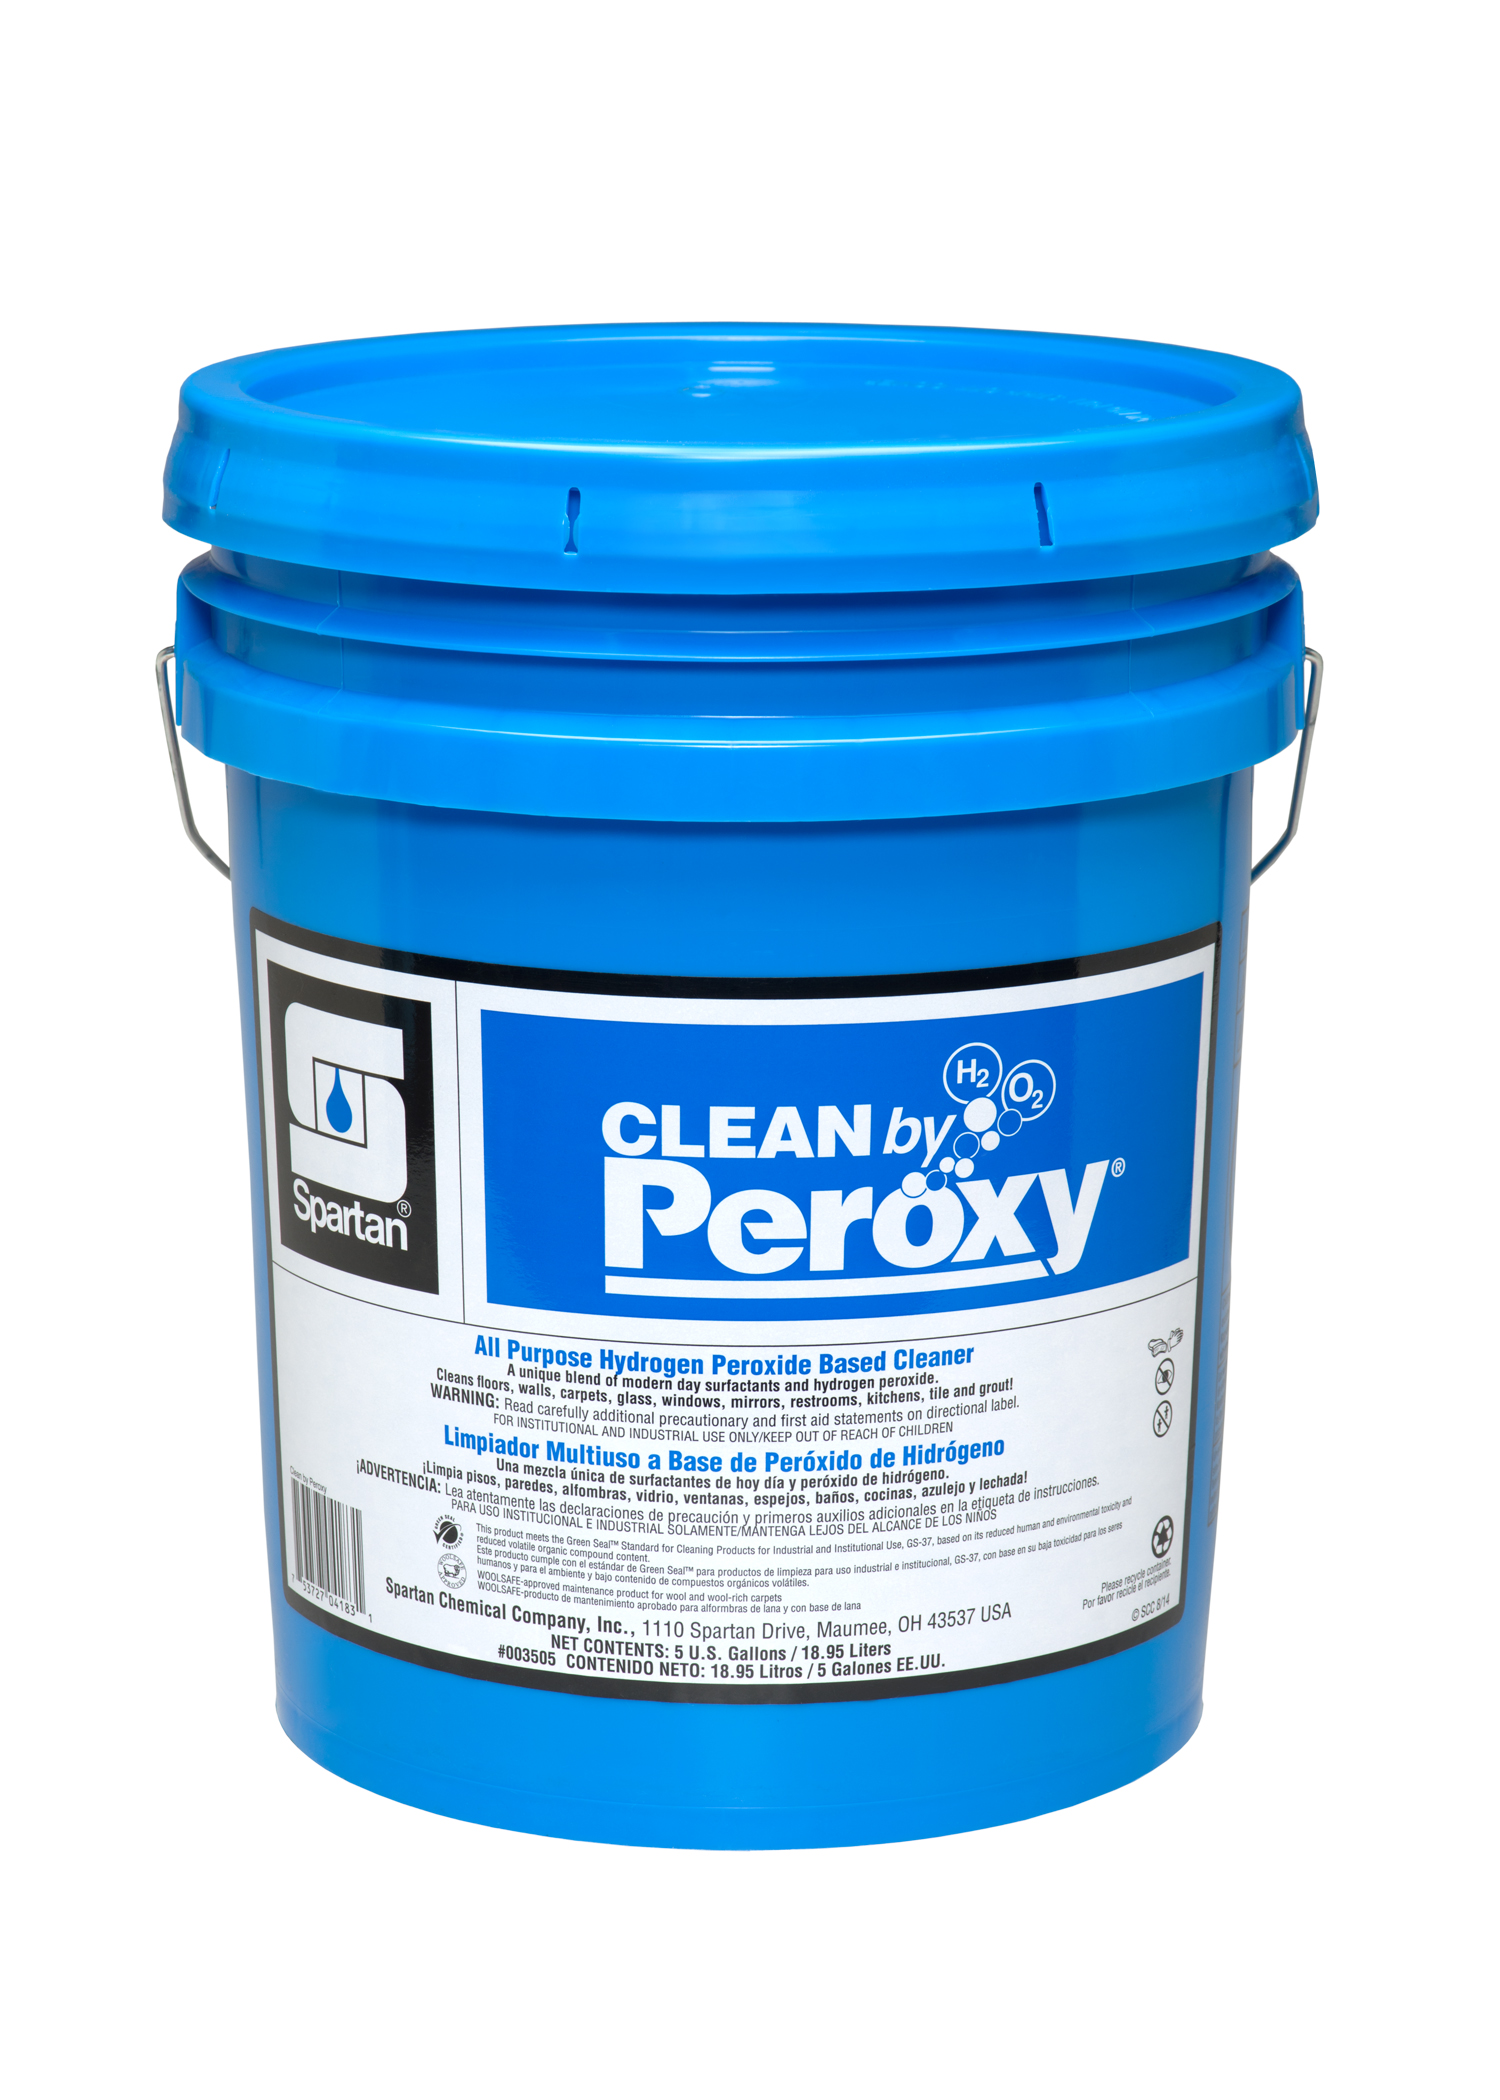 Clean by Peroxy® 5 gallon pail